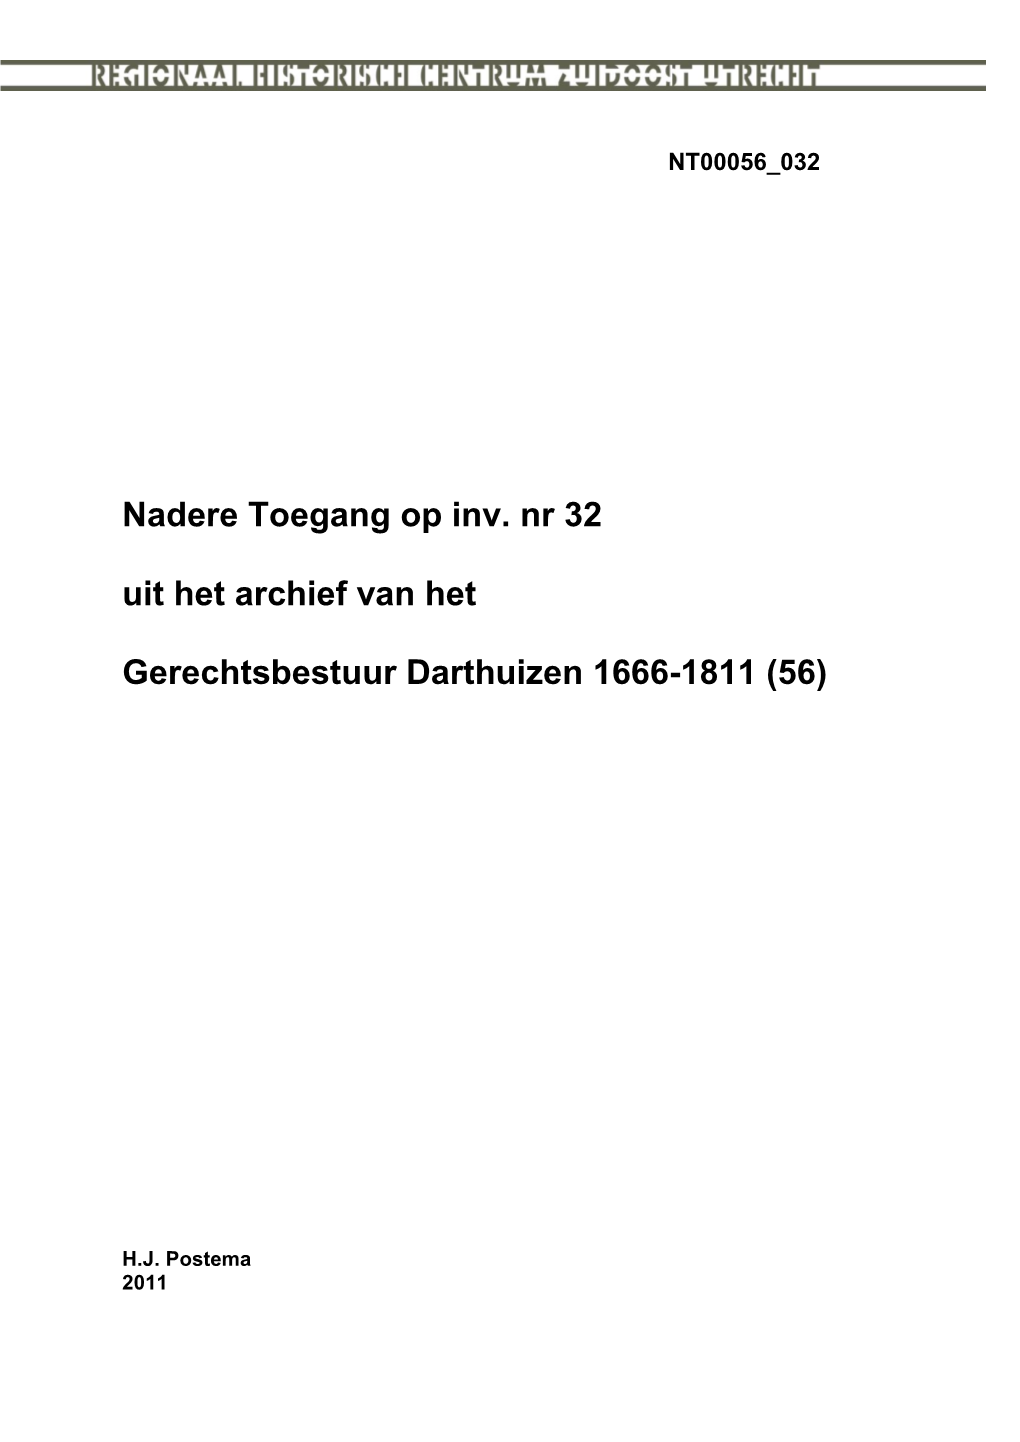 Darthuizen Acten Van Indemniteit 1719-1808